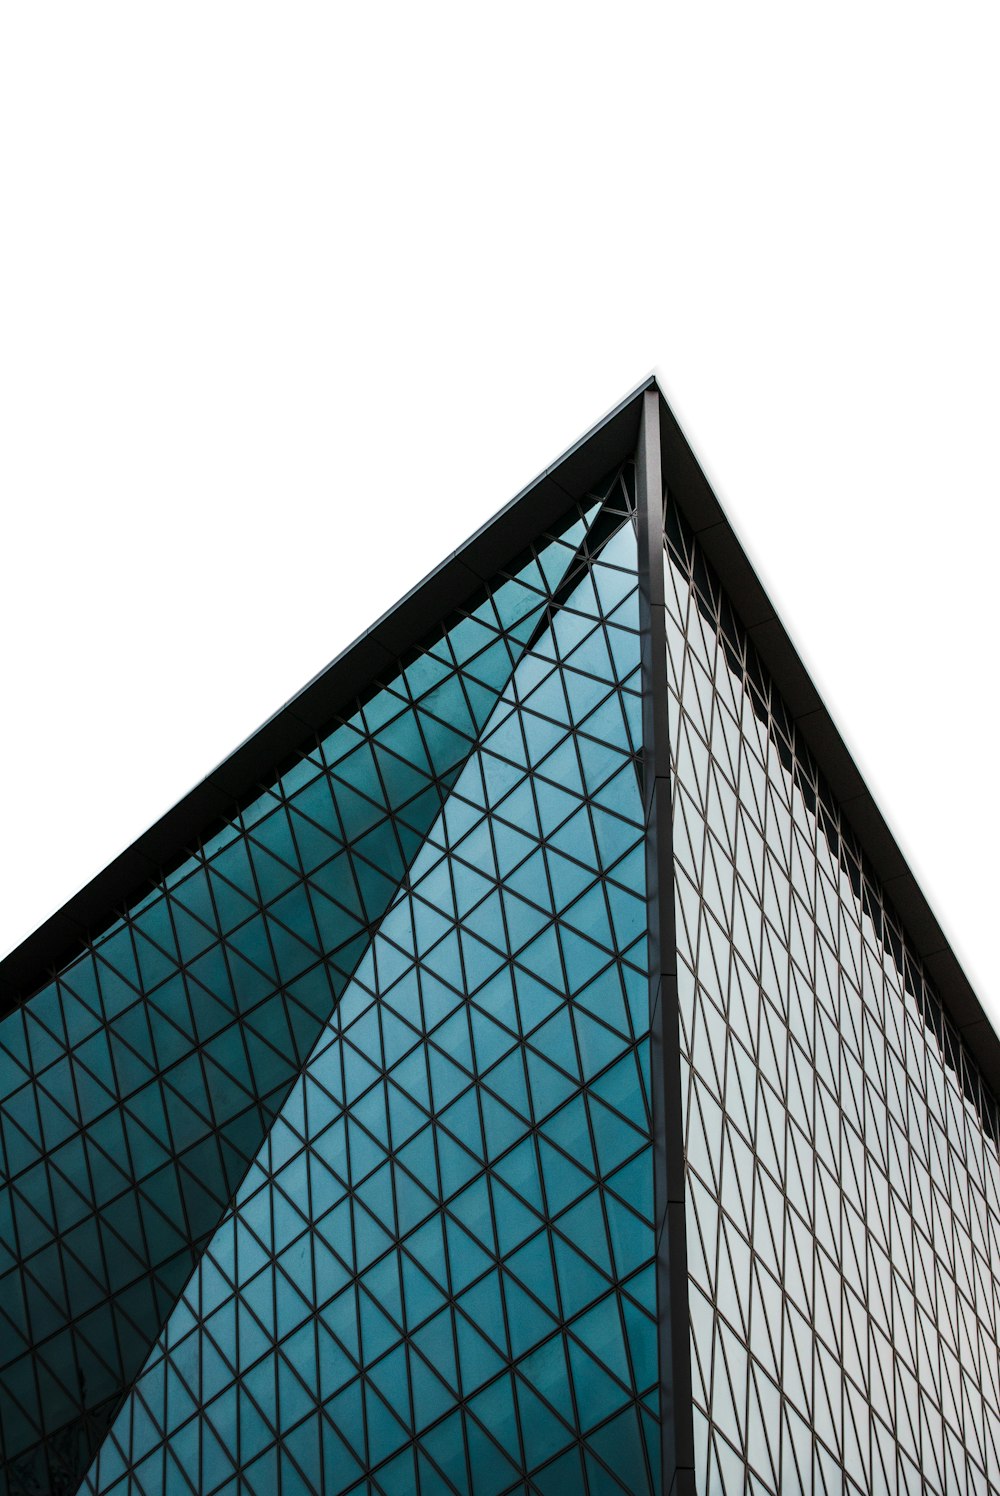 fotografia de baixo ângulo do edifício de arranha-céus com paredes de vidro cinzento